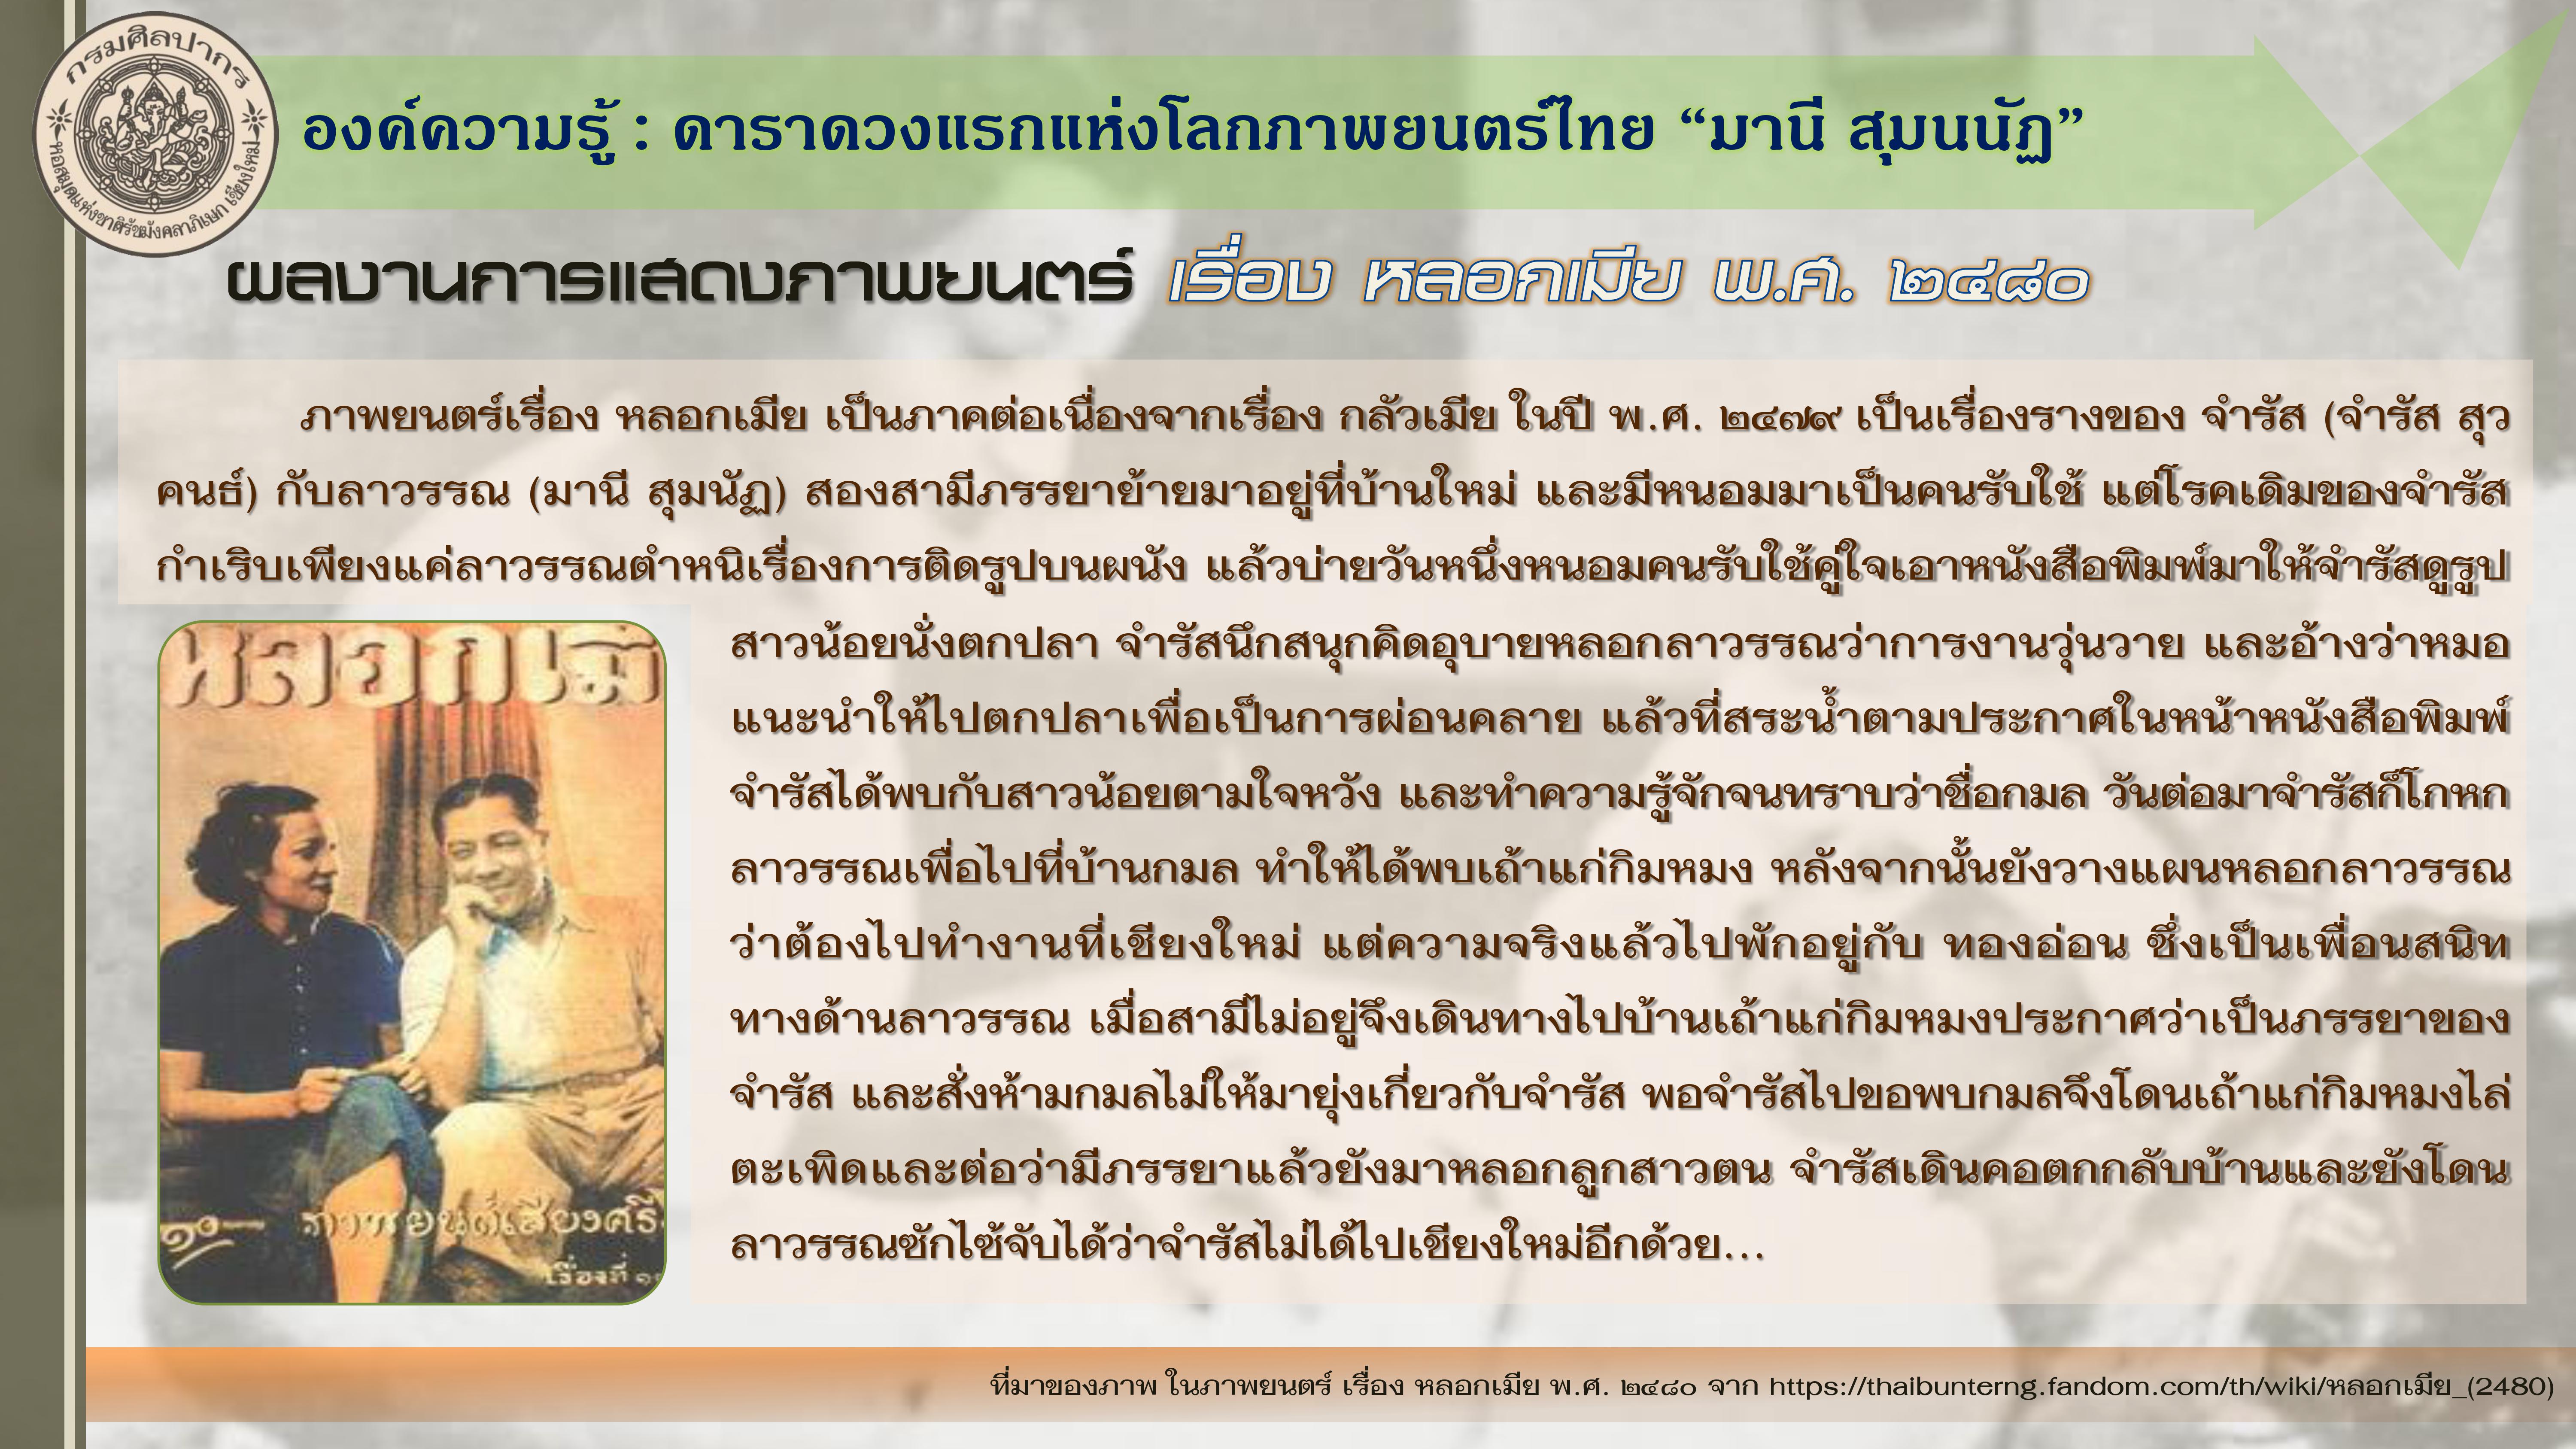 องค์ความรู้ : ดาราดวงแรกแห่งโลกภาพยนตร์ไทย “มานี สุมนนัฏ”